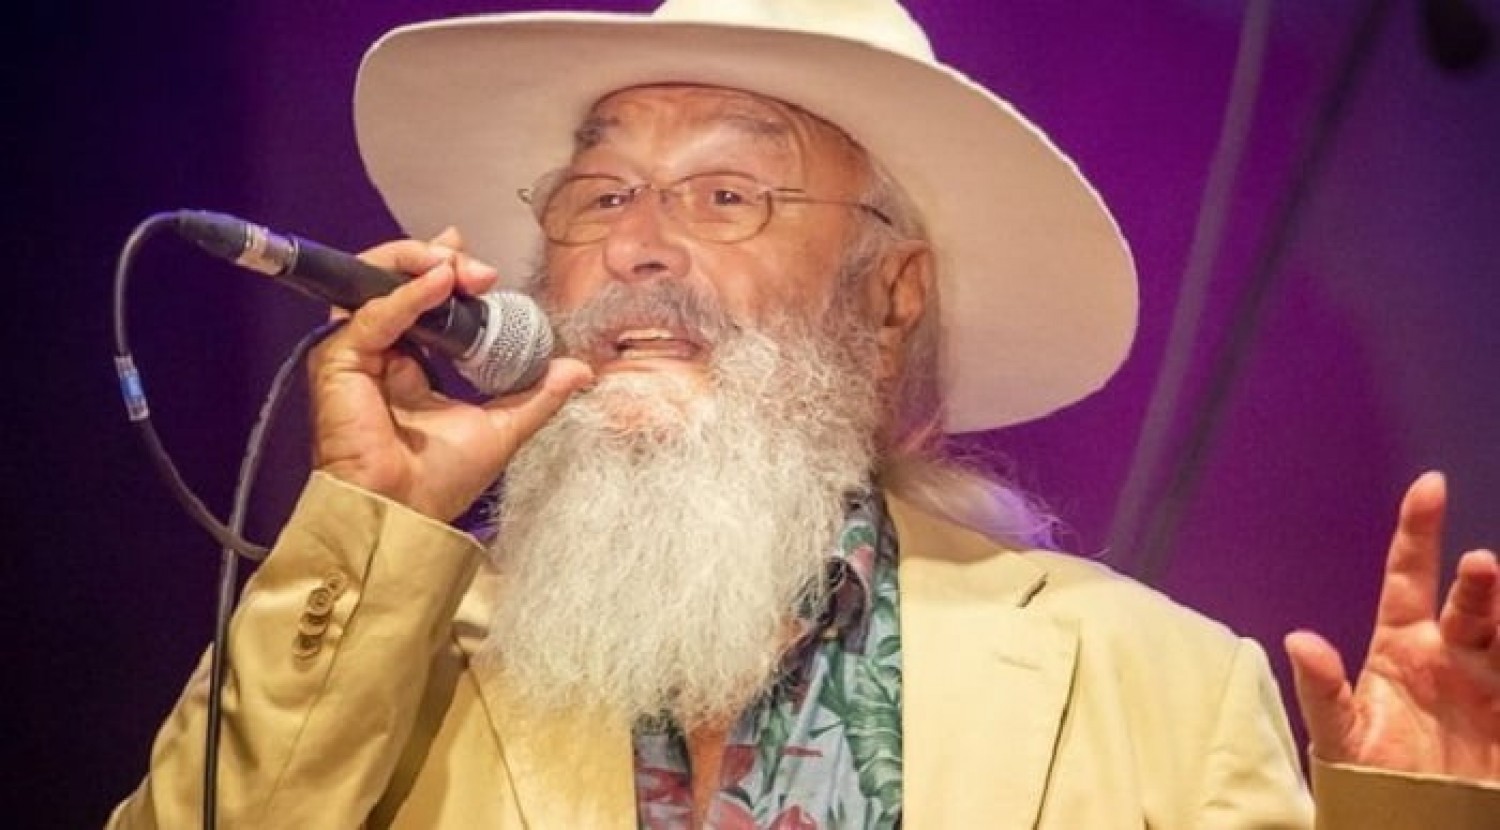 79 évesen ételkihordással tölti az idejét az Apostol együttes ismert énekese